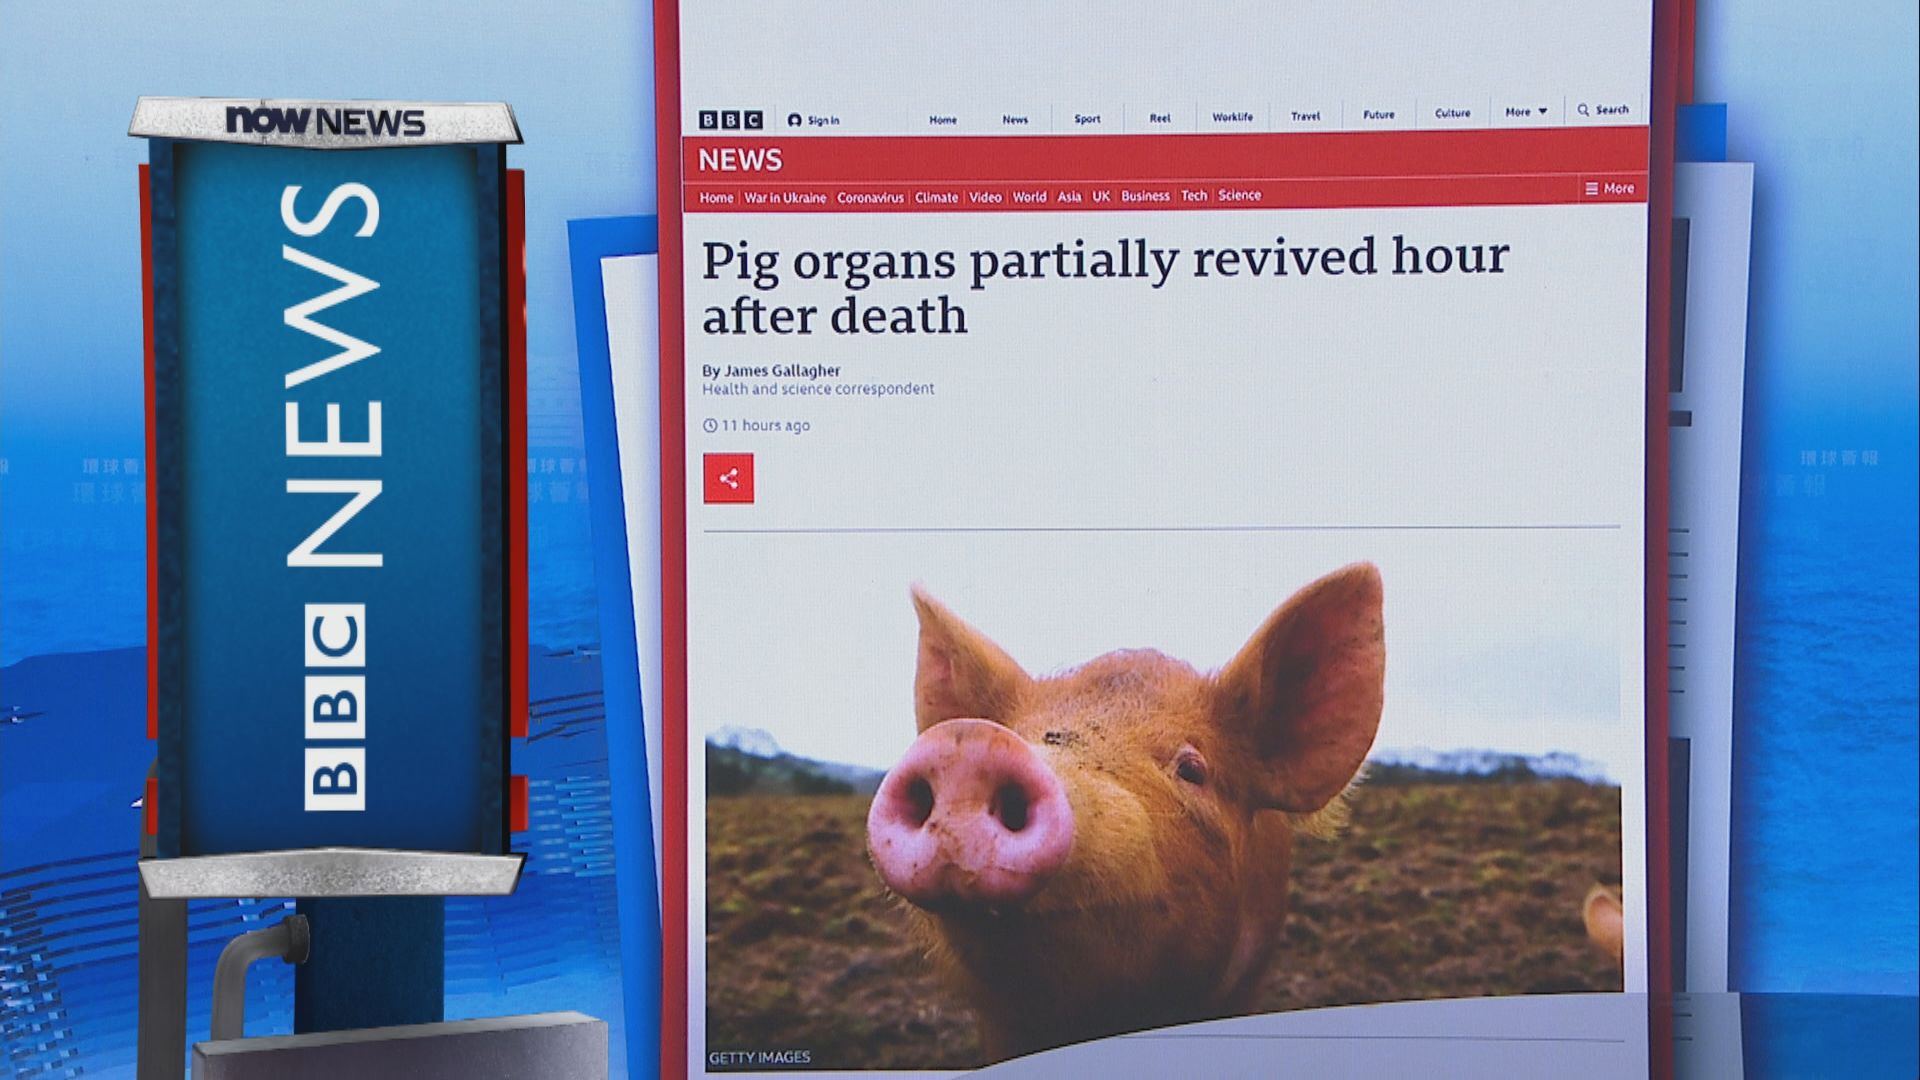 【環球薈報】耶魯大學研究令豬器官「起死回生」